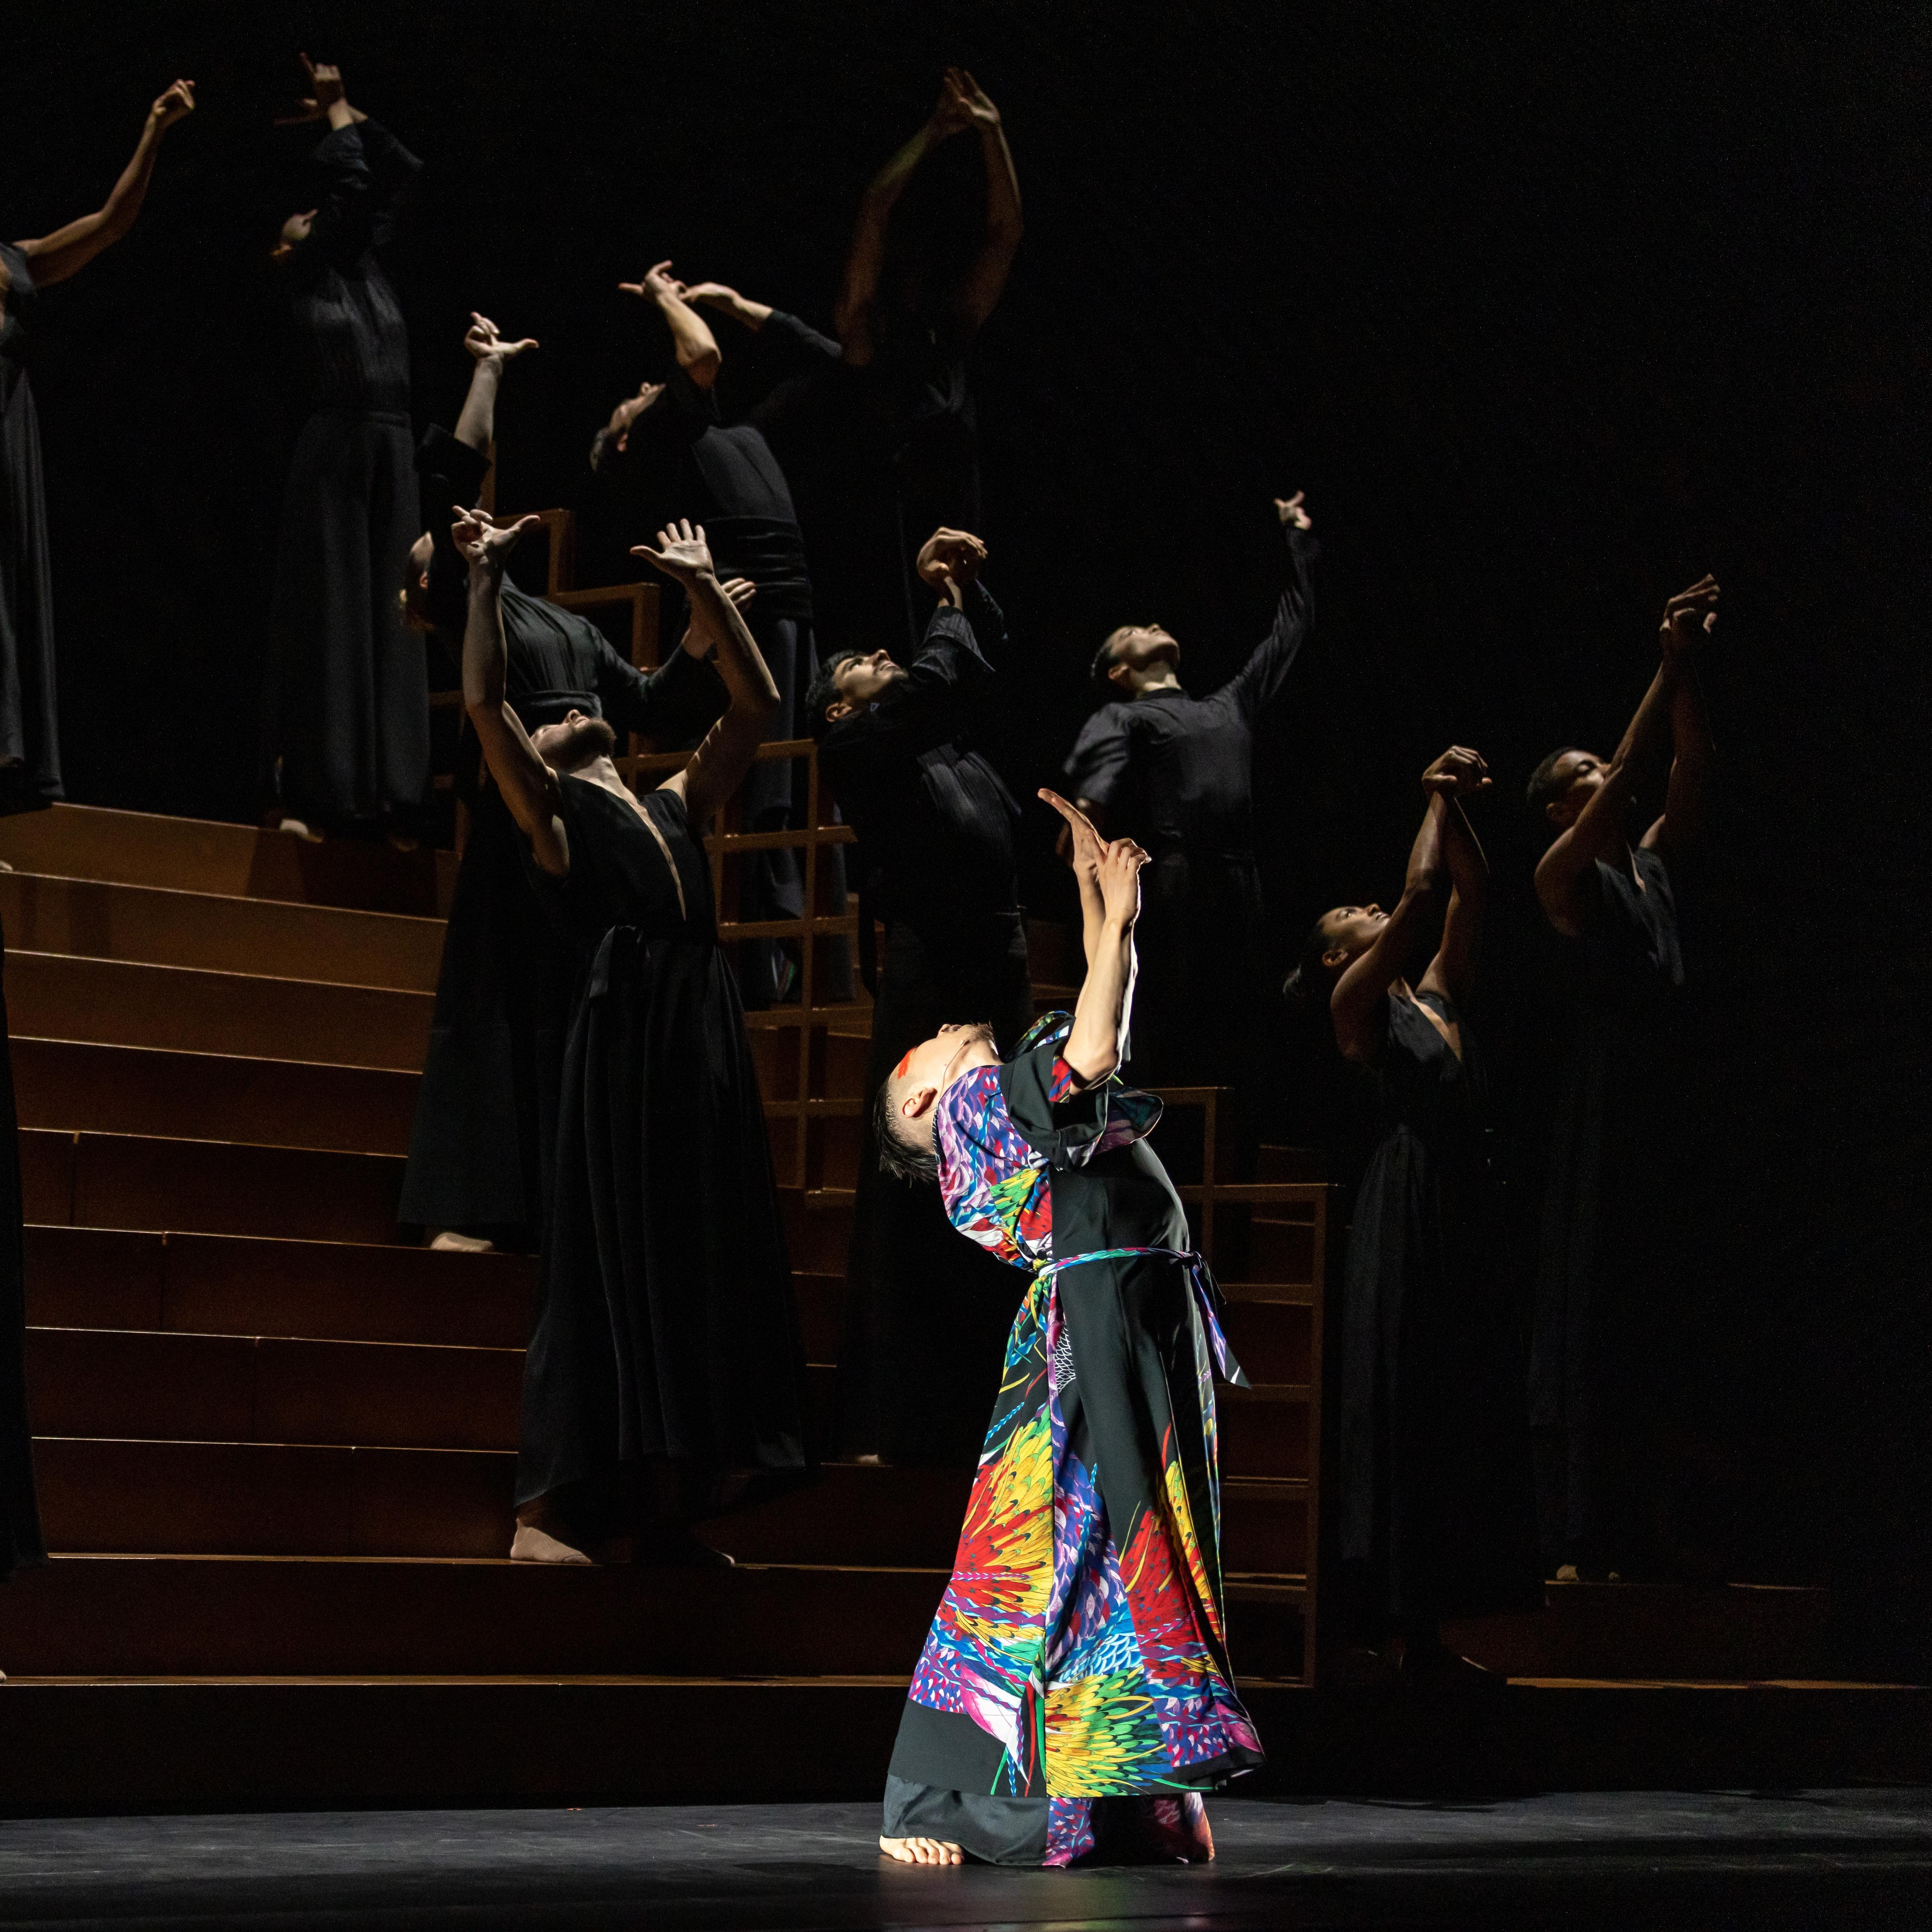 Danseur de Ukiyo-e portant un costume coloré, se penche vers l’arrière les bras vers le haut. Des danseurs en noir font le même mouvement en arrière-plan.